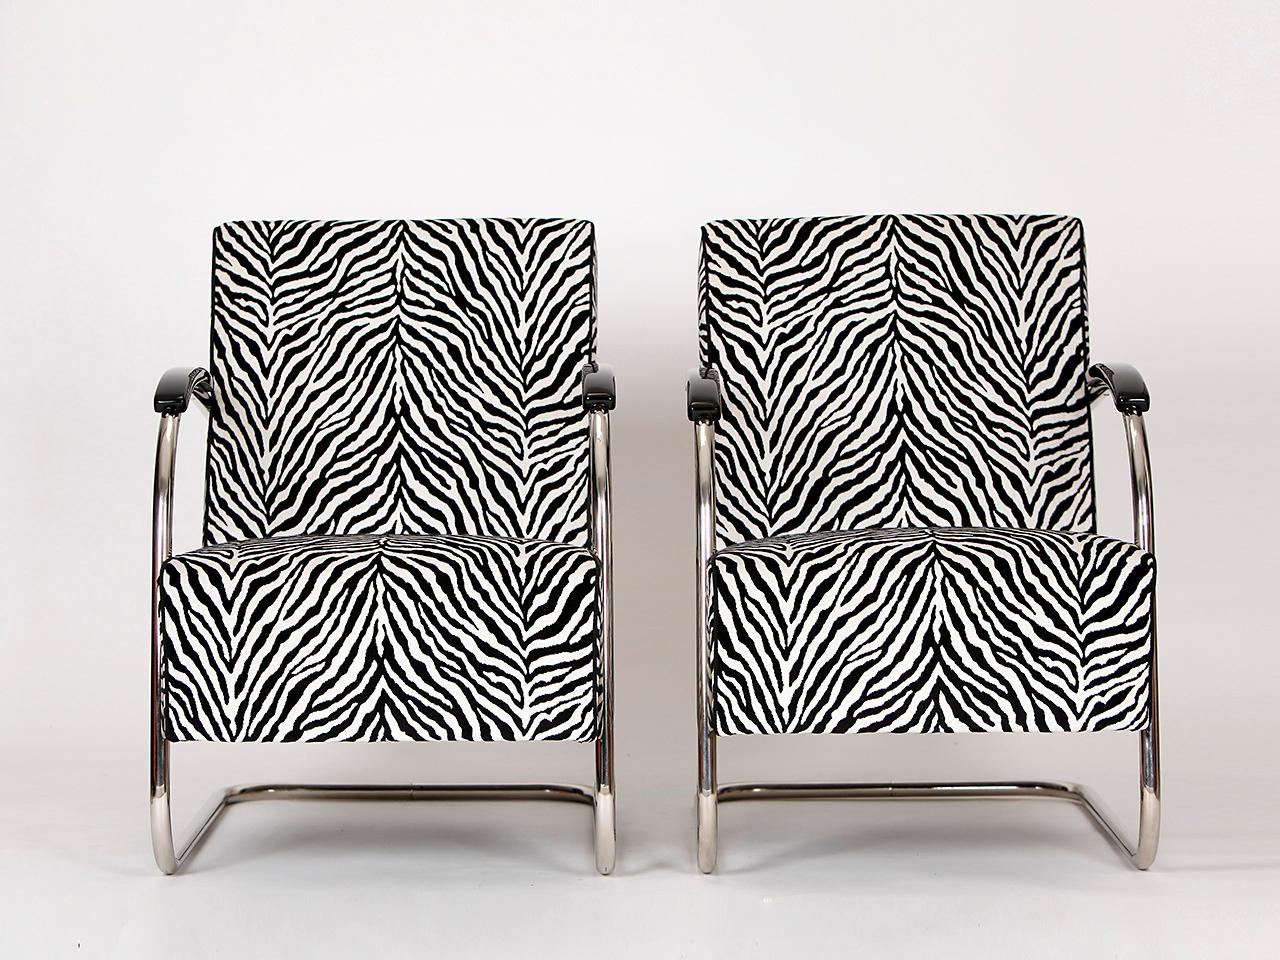 Ein Paar Sessel mit Stahlrohrrahmen aus den 1930er Jahren. Hergestellt von Mücke & Melder-Frystat, Karvina in der ehemaligen Tschechoslowakei. Vollständig restauriert mit neuen Federn. Die Armlehnen sind braun lackiert. Neu gepolstert mit einem